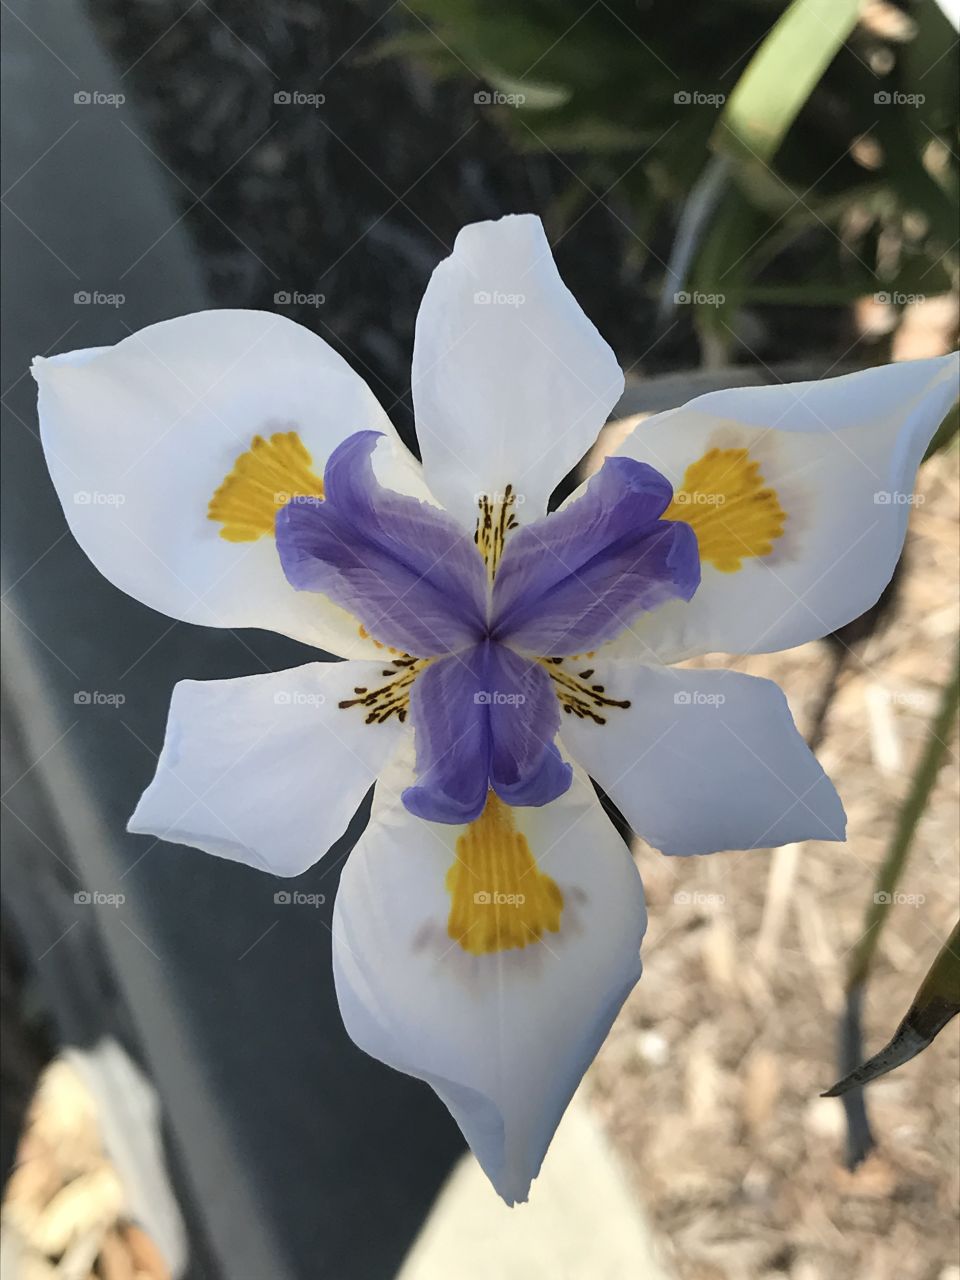 Unique flower